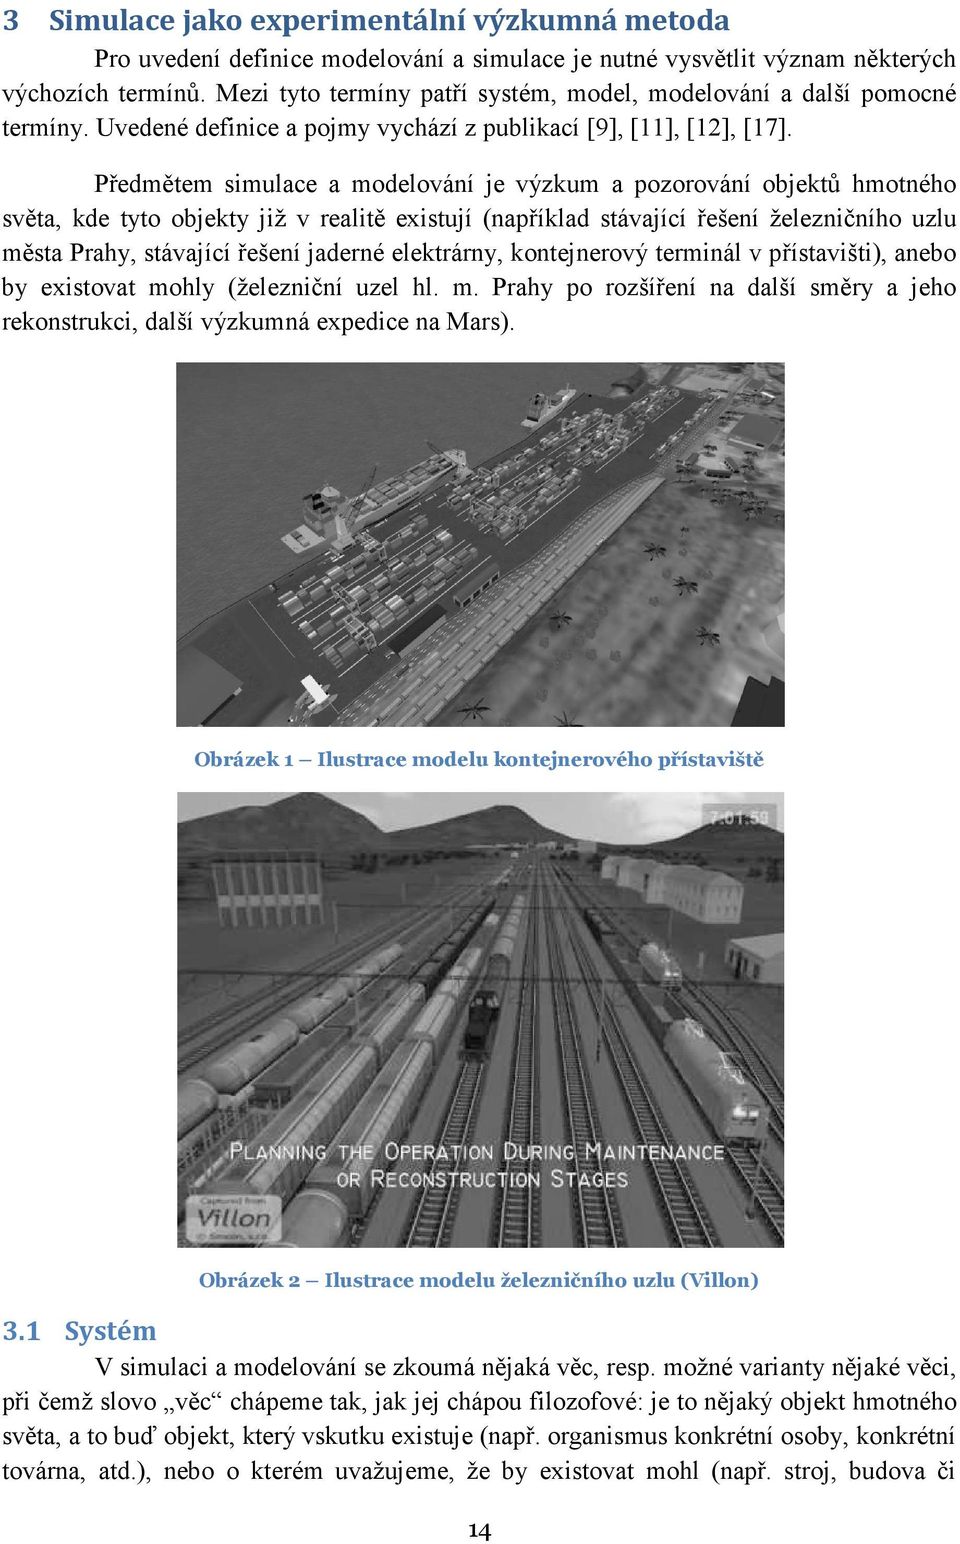 Předmětem simulace a modelování je výzkum a pozorování objektů hmotného světa, kde tyto objekty již v realitě existují (například stávající řešení železničního uzlu města Prahy, stávající řešení